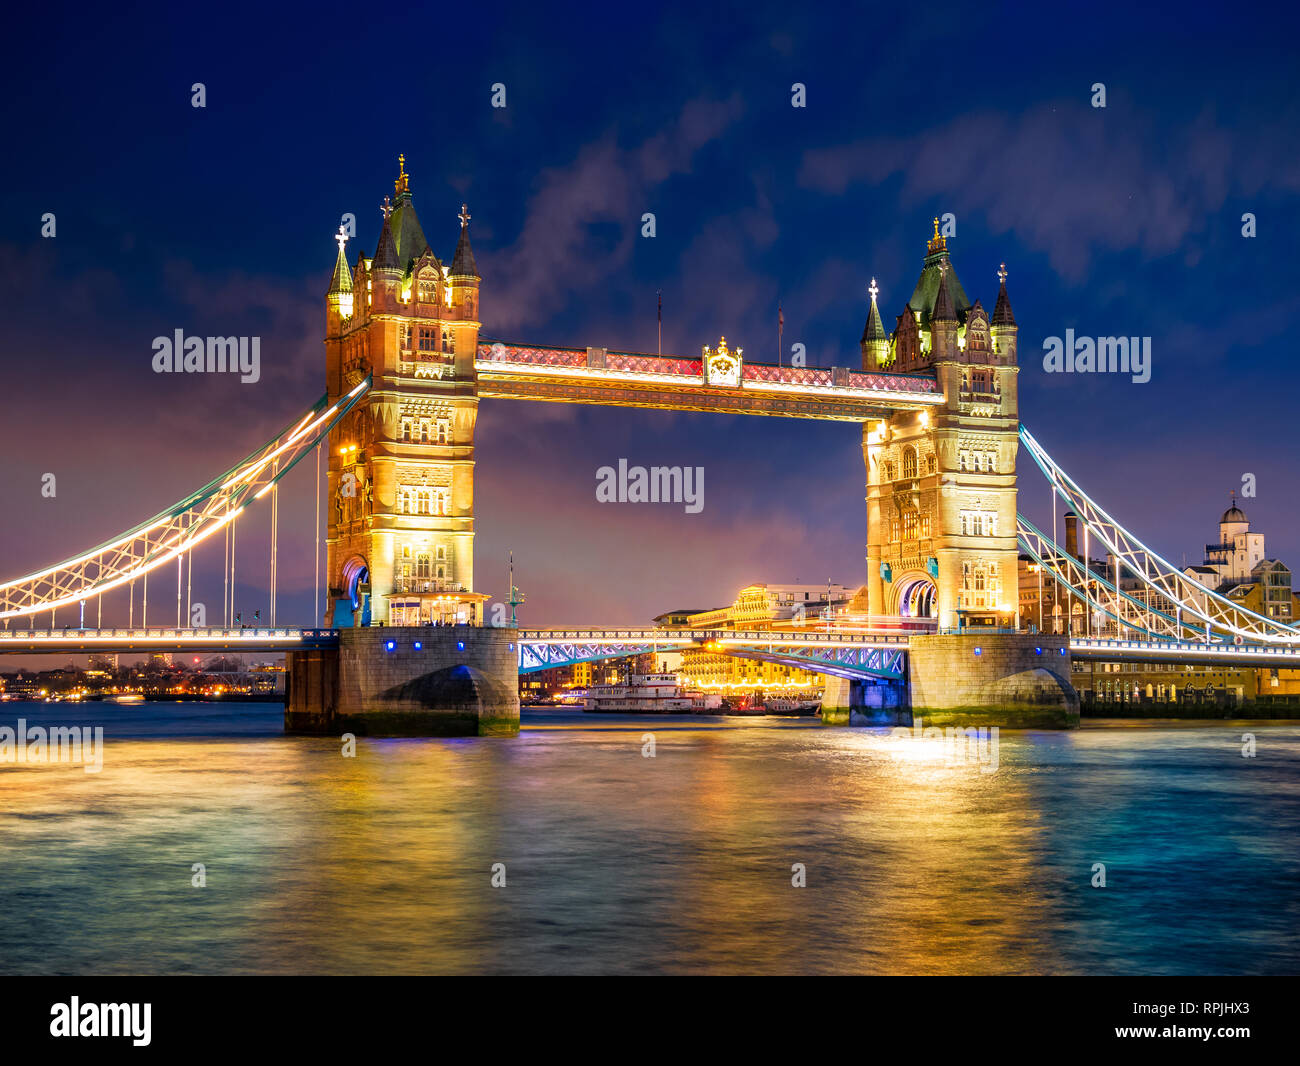 Bella scena serale con il famoso Tower Bridge di Londra illuminato e riflesso nel fiume Tamigi in Inghilterra, Regno Unito Foto Stock